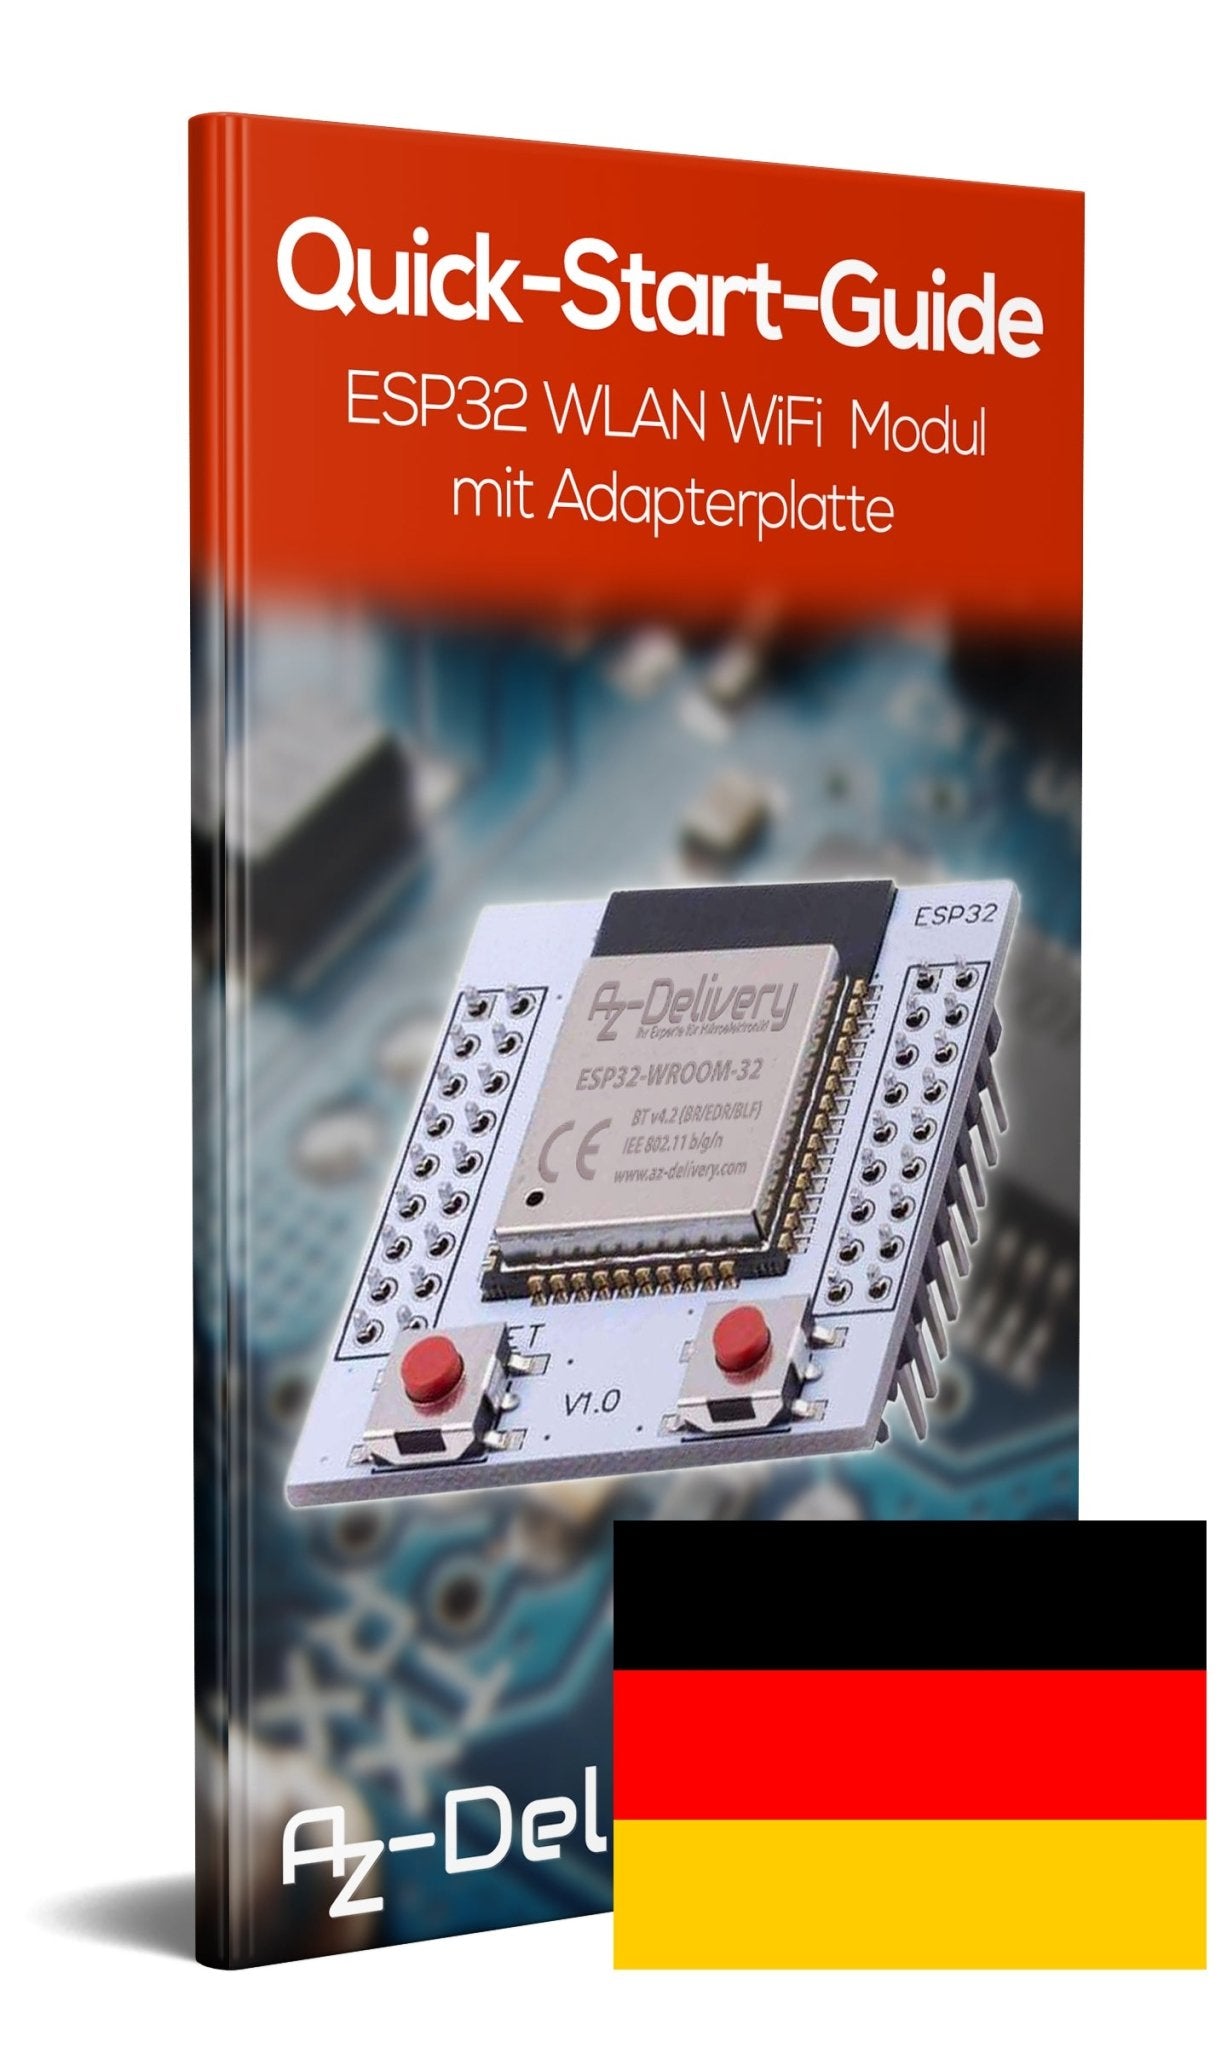 ESP32 Wlan WiFi Modul mit gratis Adapterplatte für Raspberry Pi und Mikrocontroller - AZ-Delivery